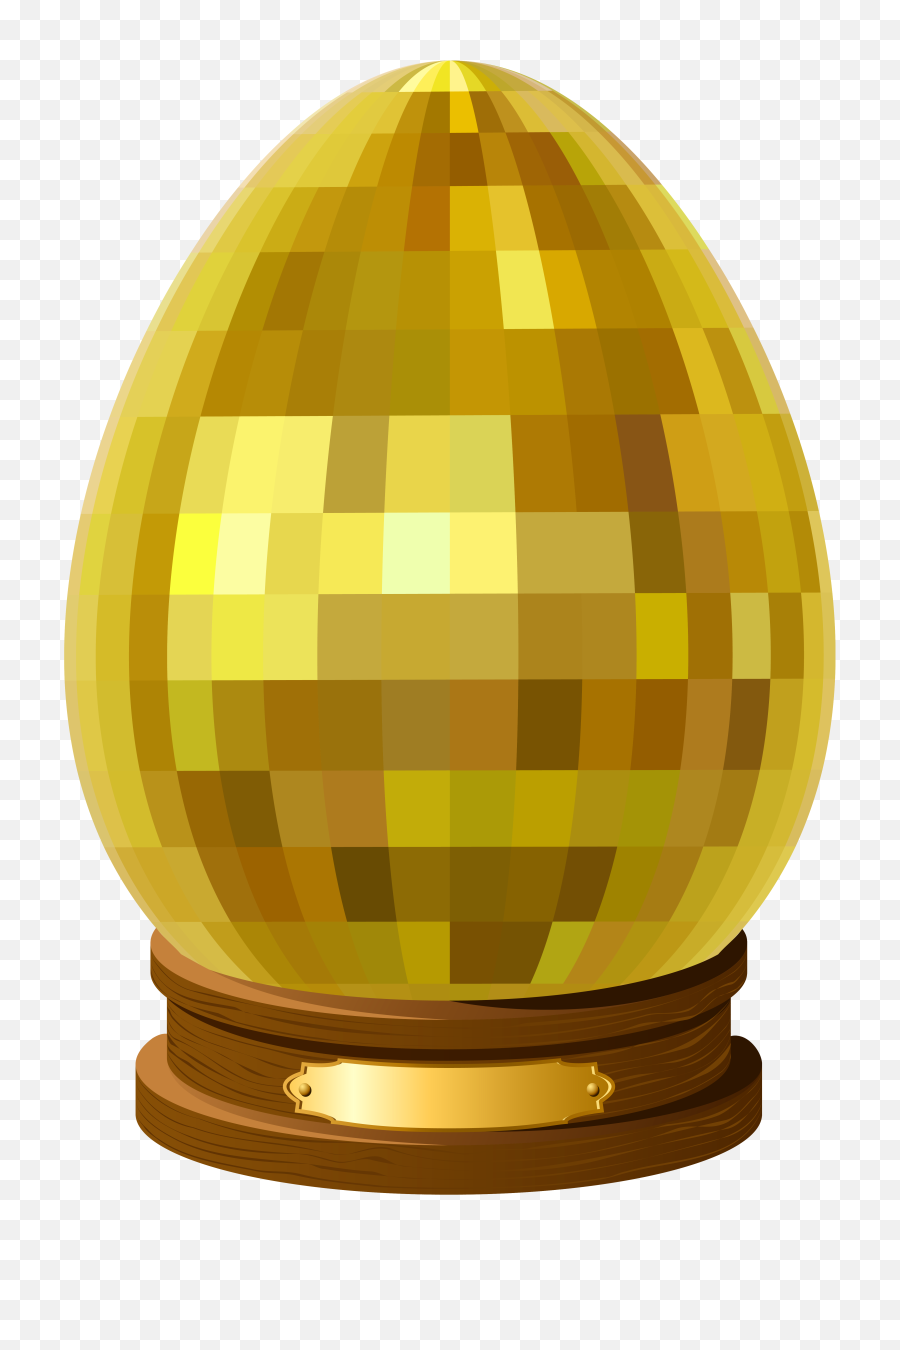 Download Big Golden Easter Egg - Golden Easter Cartoon Eggs Png,Easter  Background Png - free transparent png images 